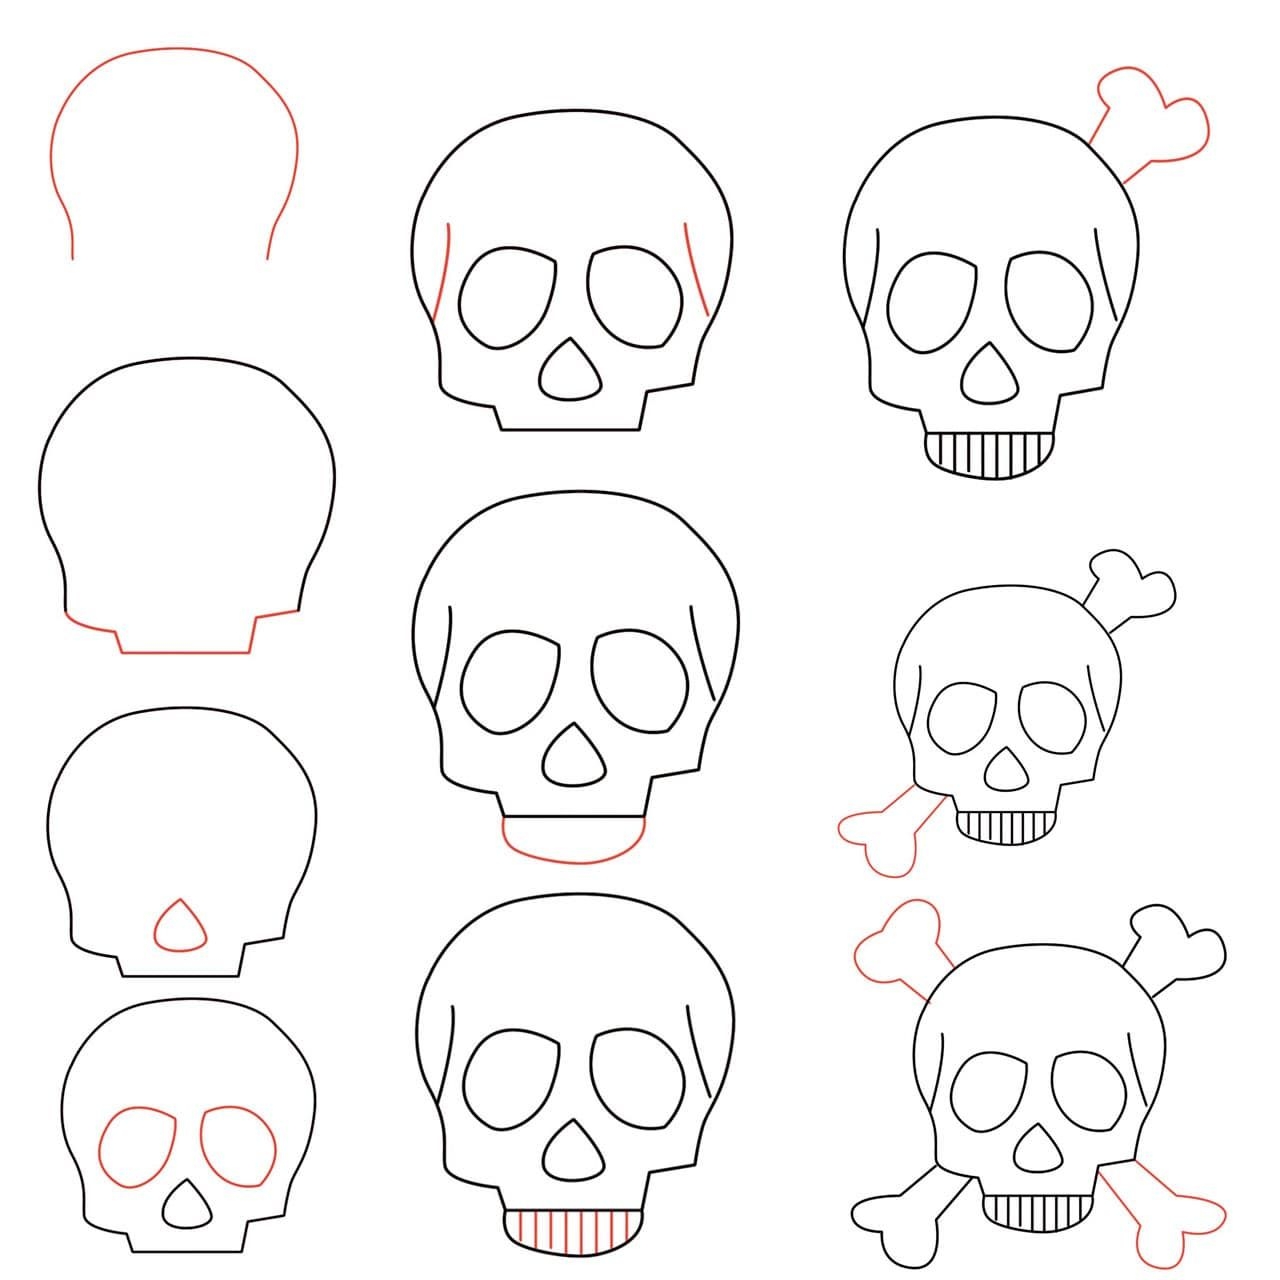 Как нарисовать череп карандашом: поэтапное описание как сделать рисунок в виде черепа